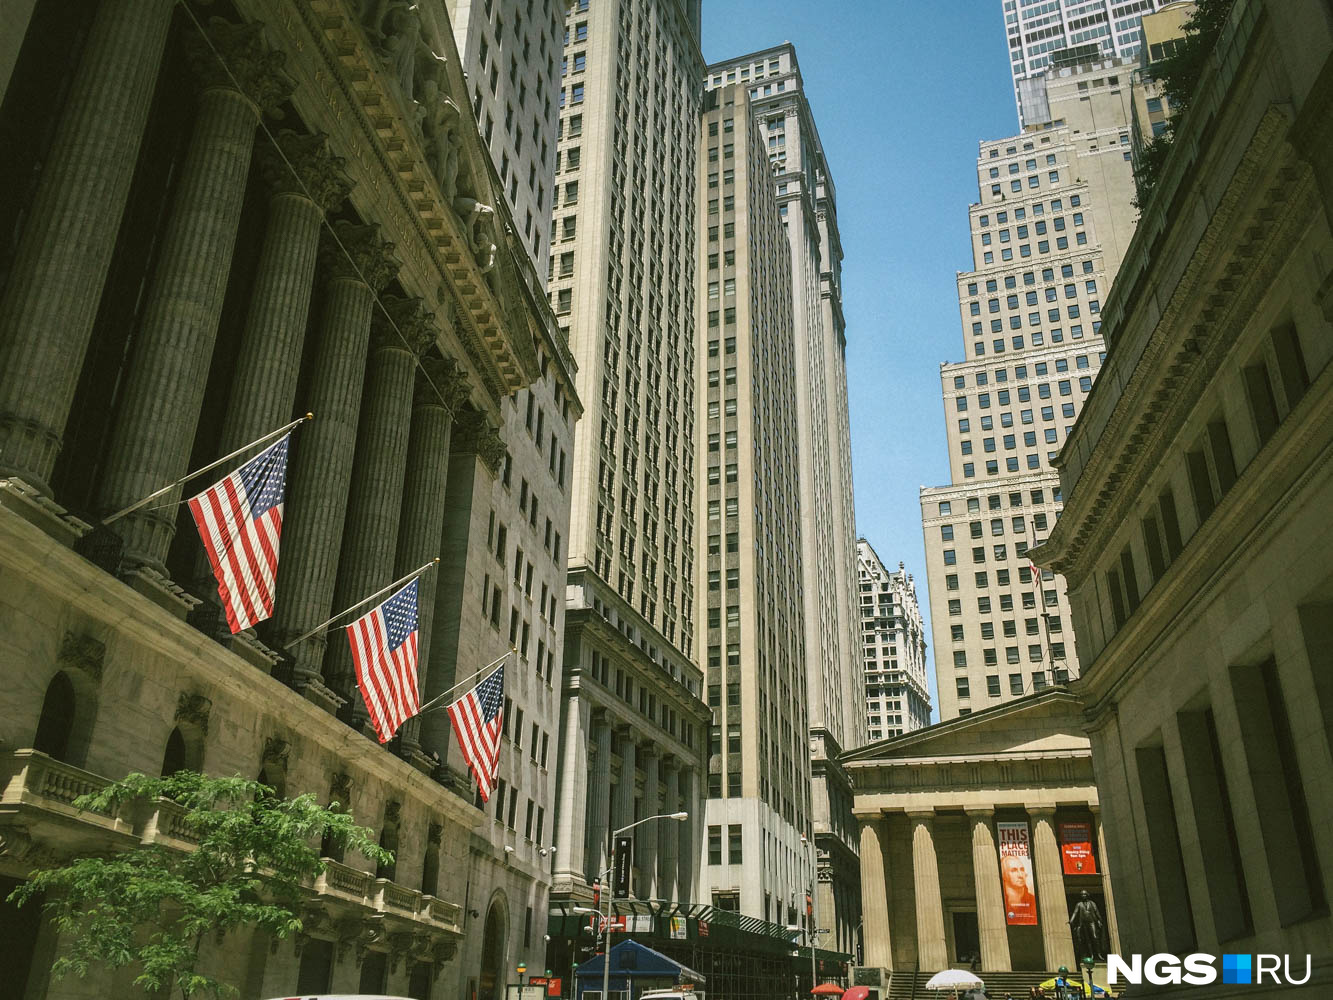 Wall Street и Нью-Йоркская фондовая биржа (слева). Крупнейшая в мире биржа по обороту, где и определяется индекс Доу-Джонса и многие другие